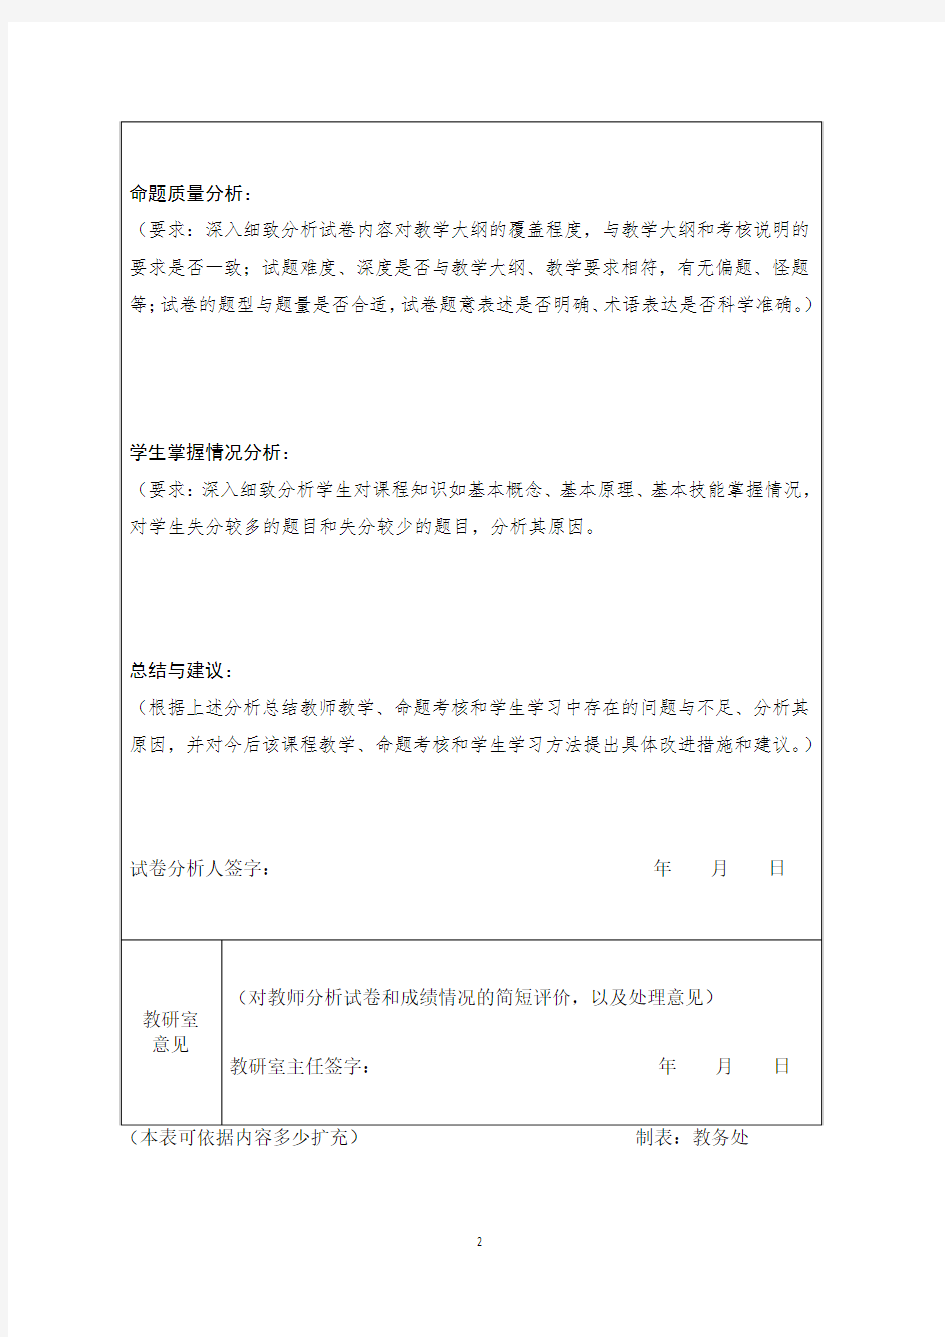 重庆医科大学试卷分析报告